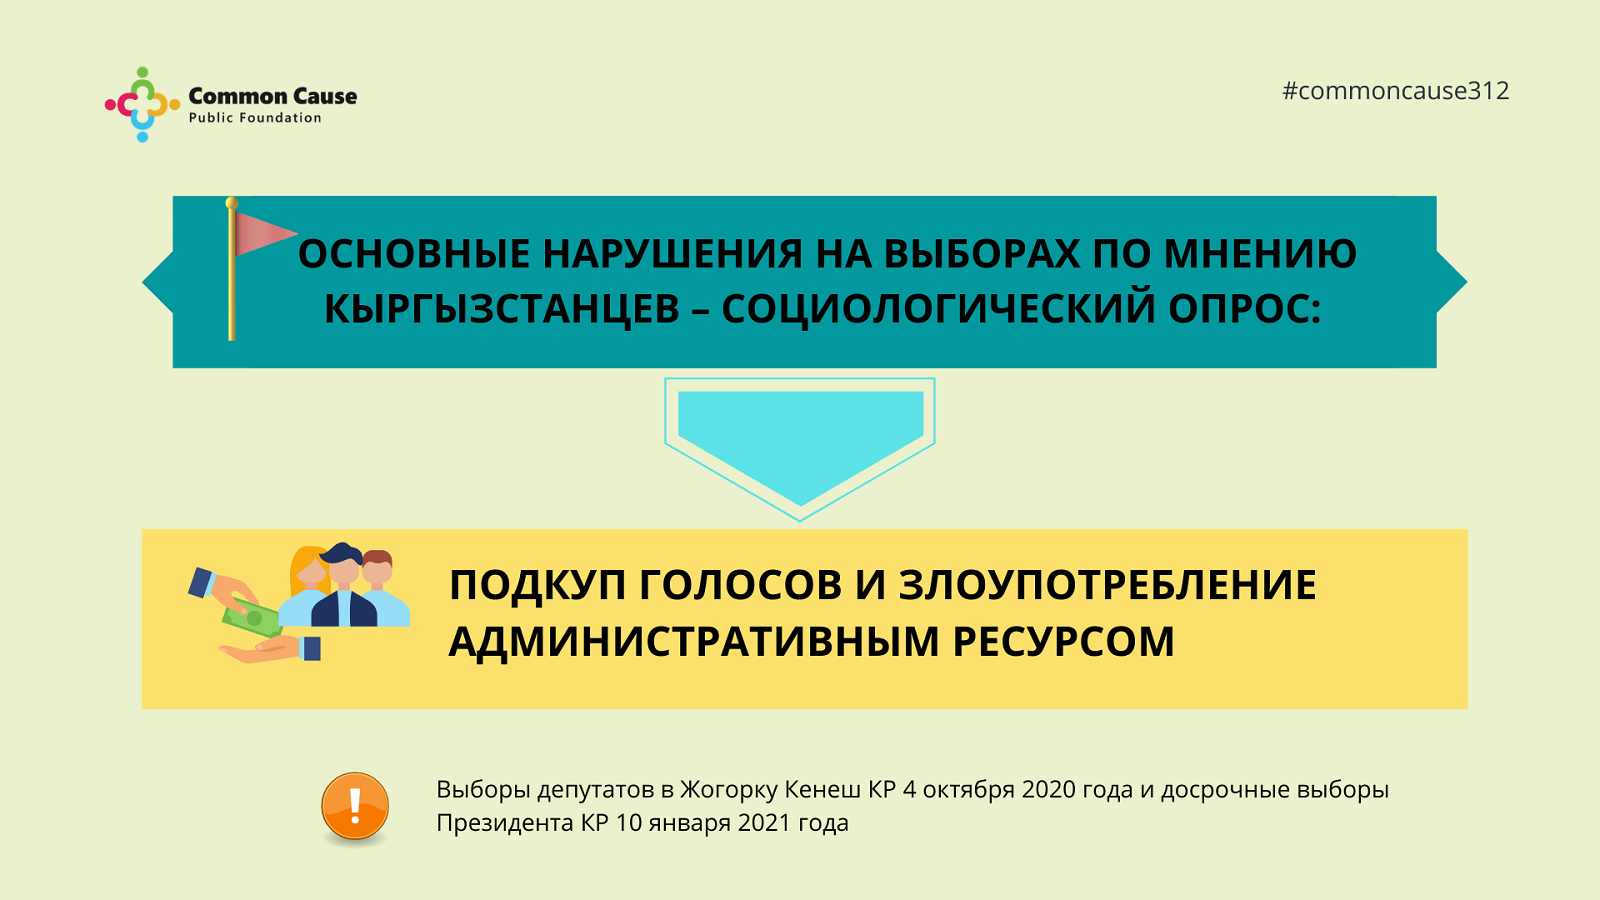 ОФ «Общее дело» представил результаты опроса о том, что граждане Кыргызстана думают о подкупе голосов и злоупотреблении административным ресурсом.